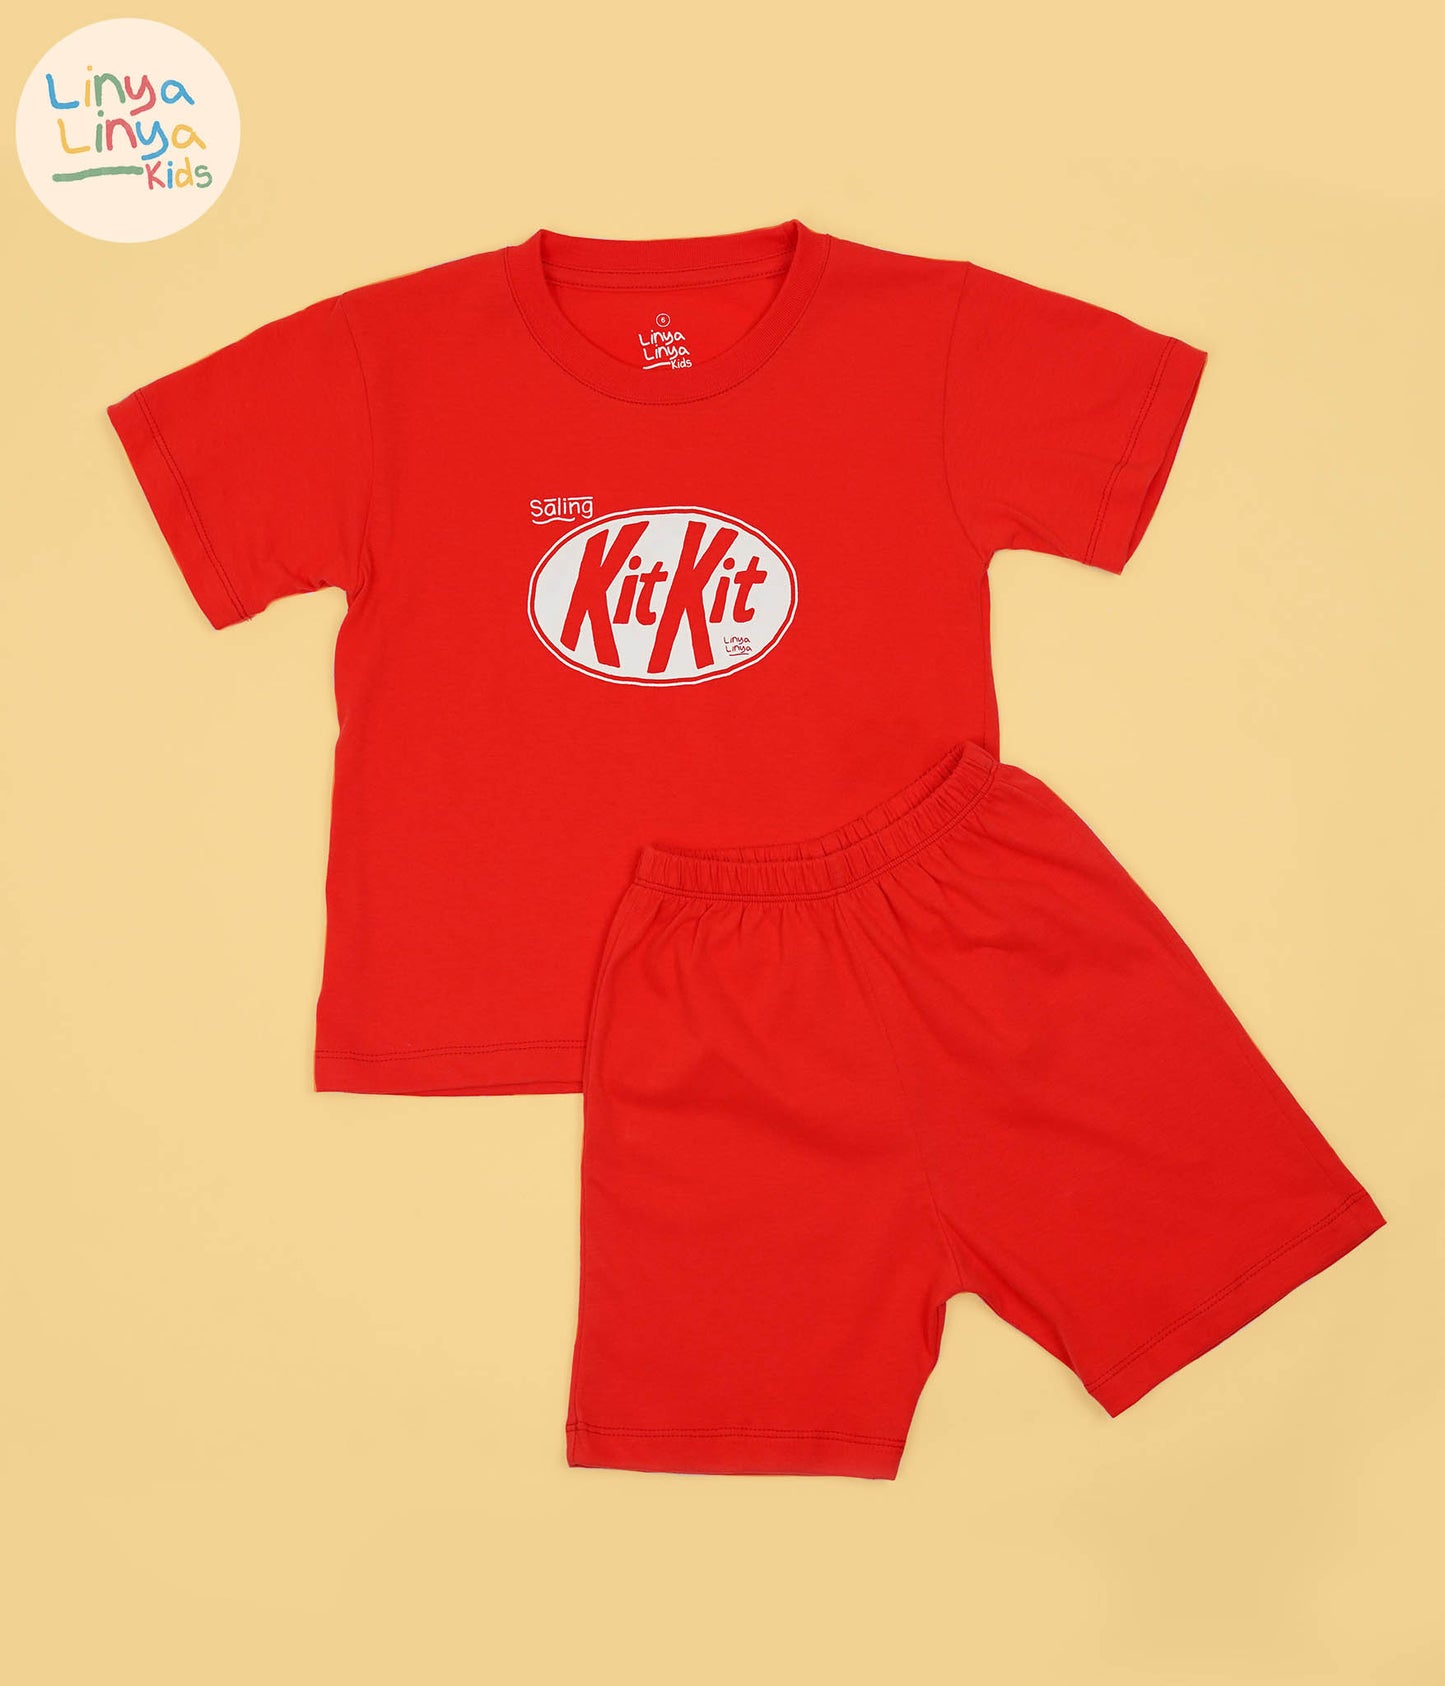 Kids Complete Terno Set: Saling KitKit